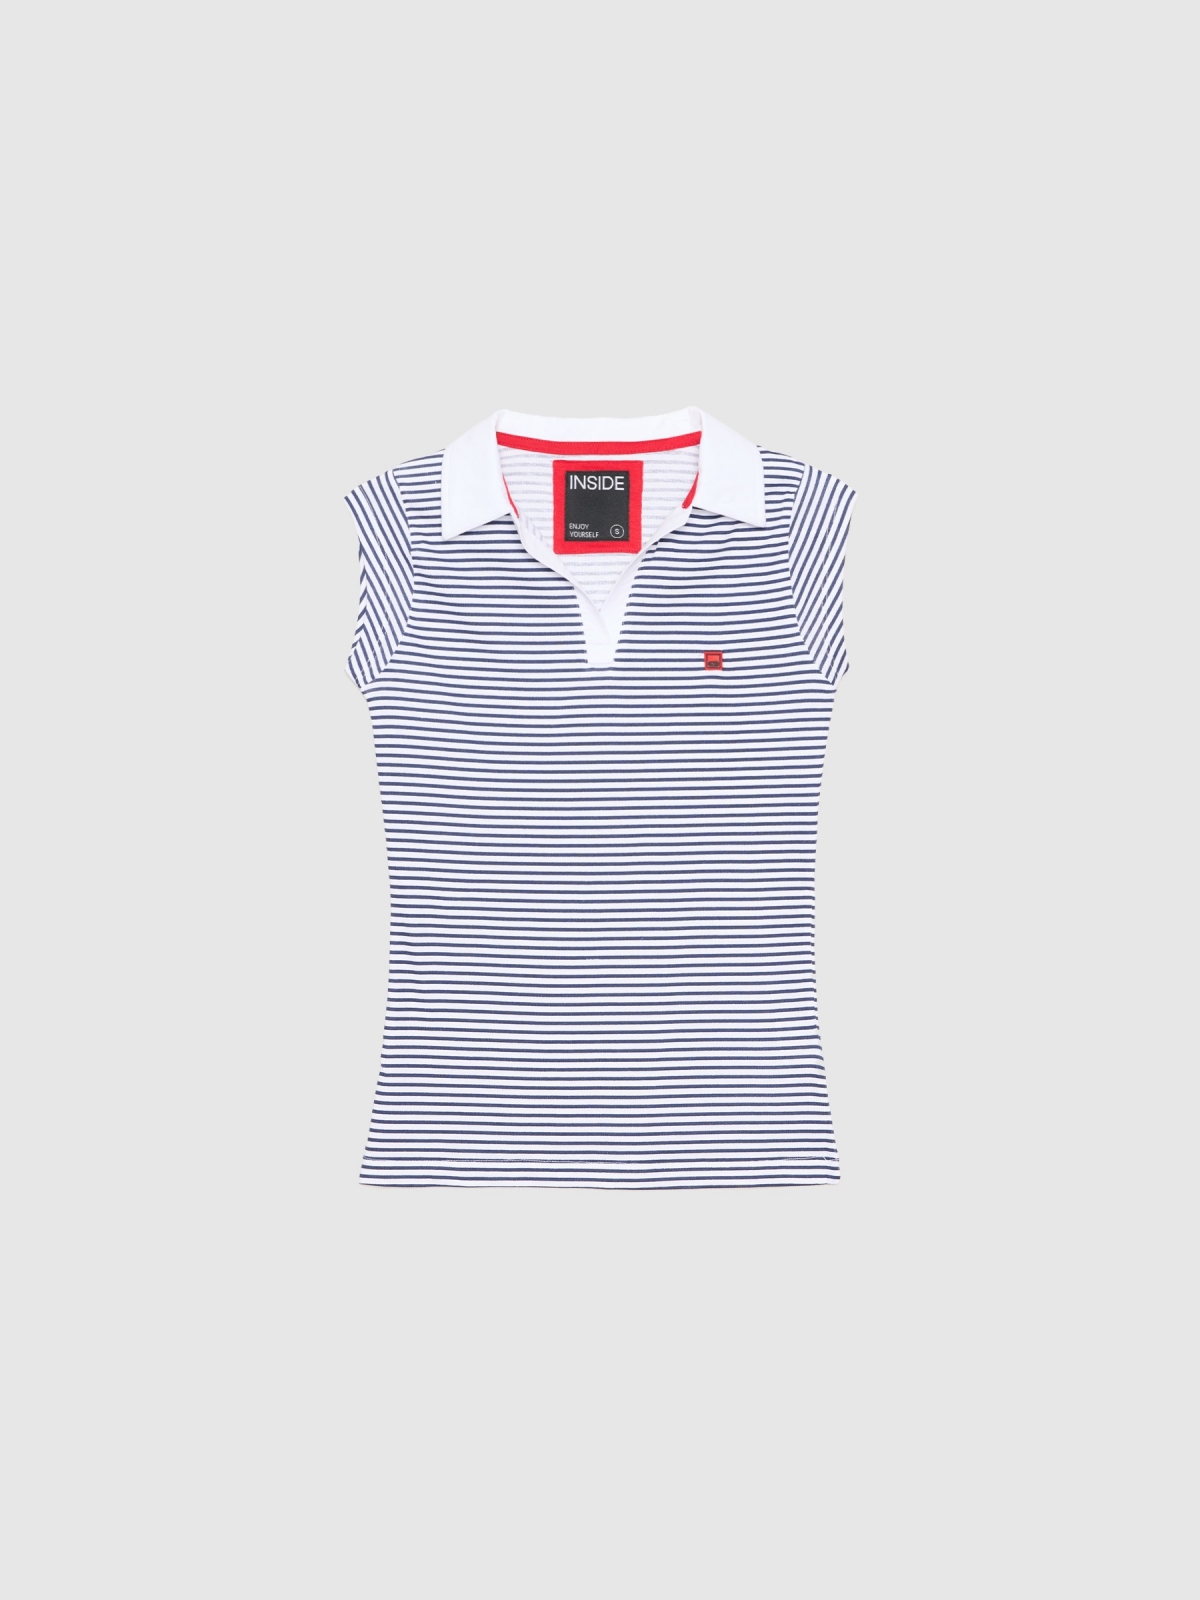  Polo shirt with sailor stripes print white